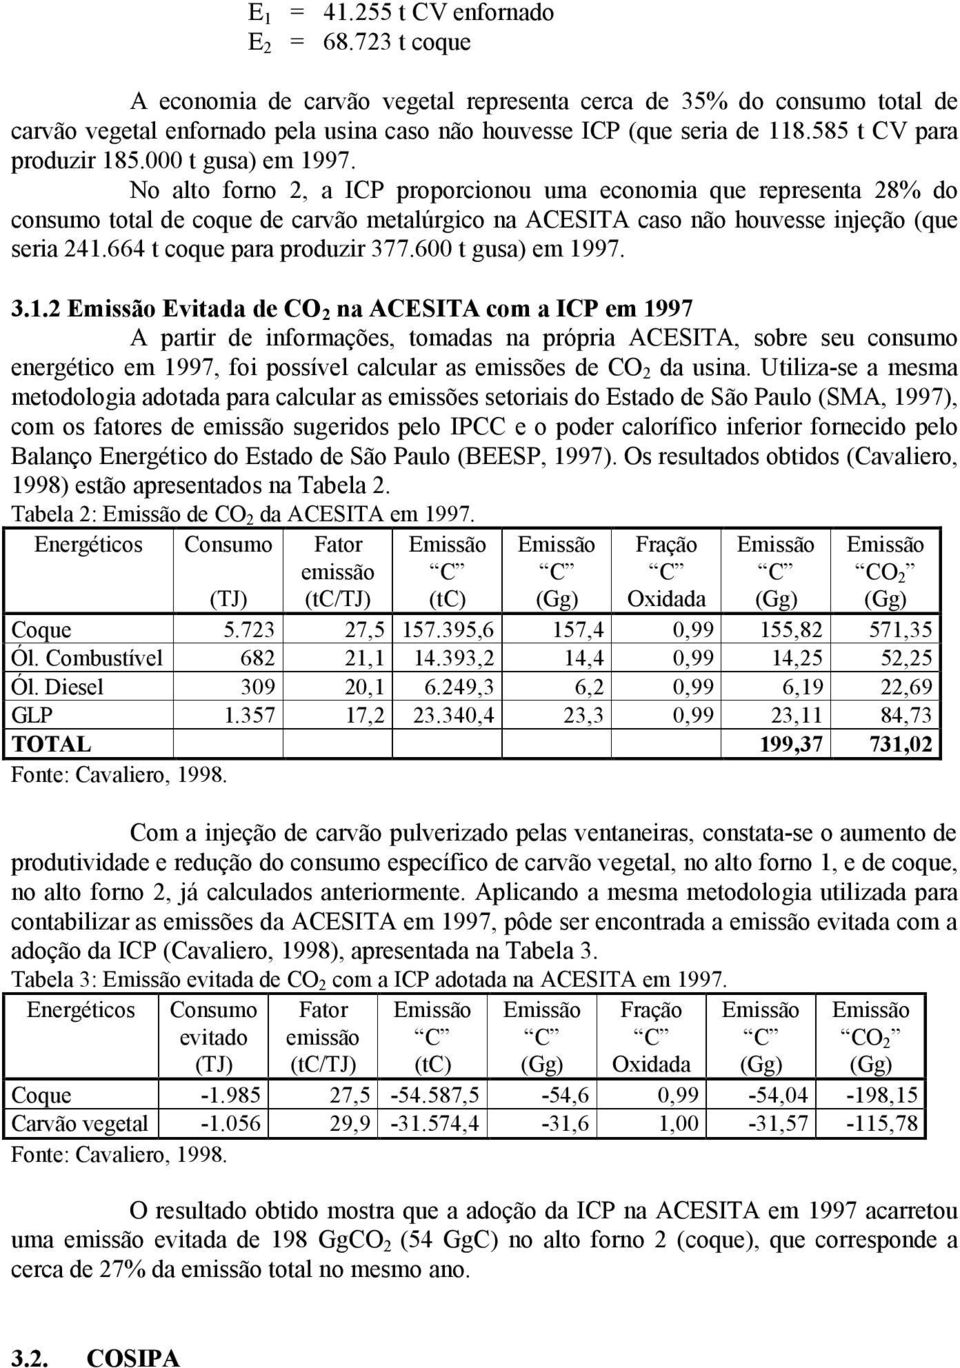 No alto forno 2, a ICP proporcionou uma economia que representa 28% do consumo total de coque de carvão metalúrgico na ACESITA caso não houvesse injeção (que seria 241.664 t coque para produzir 377.